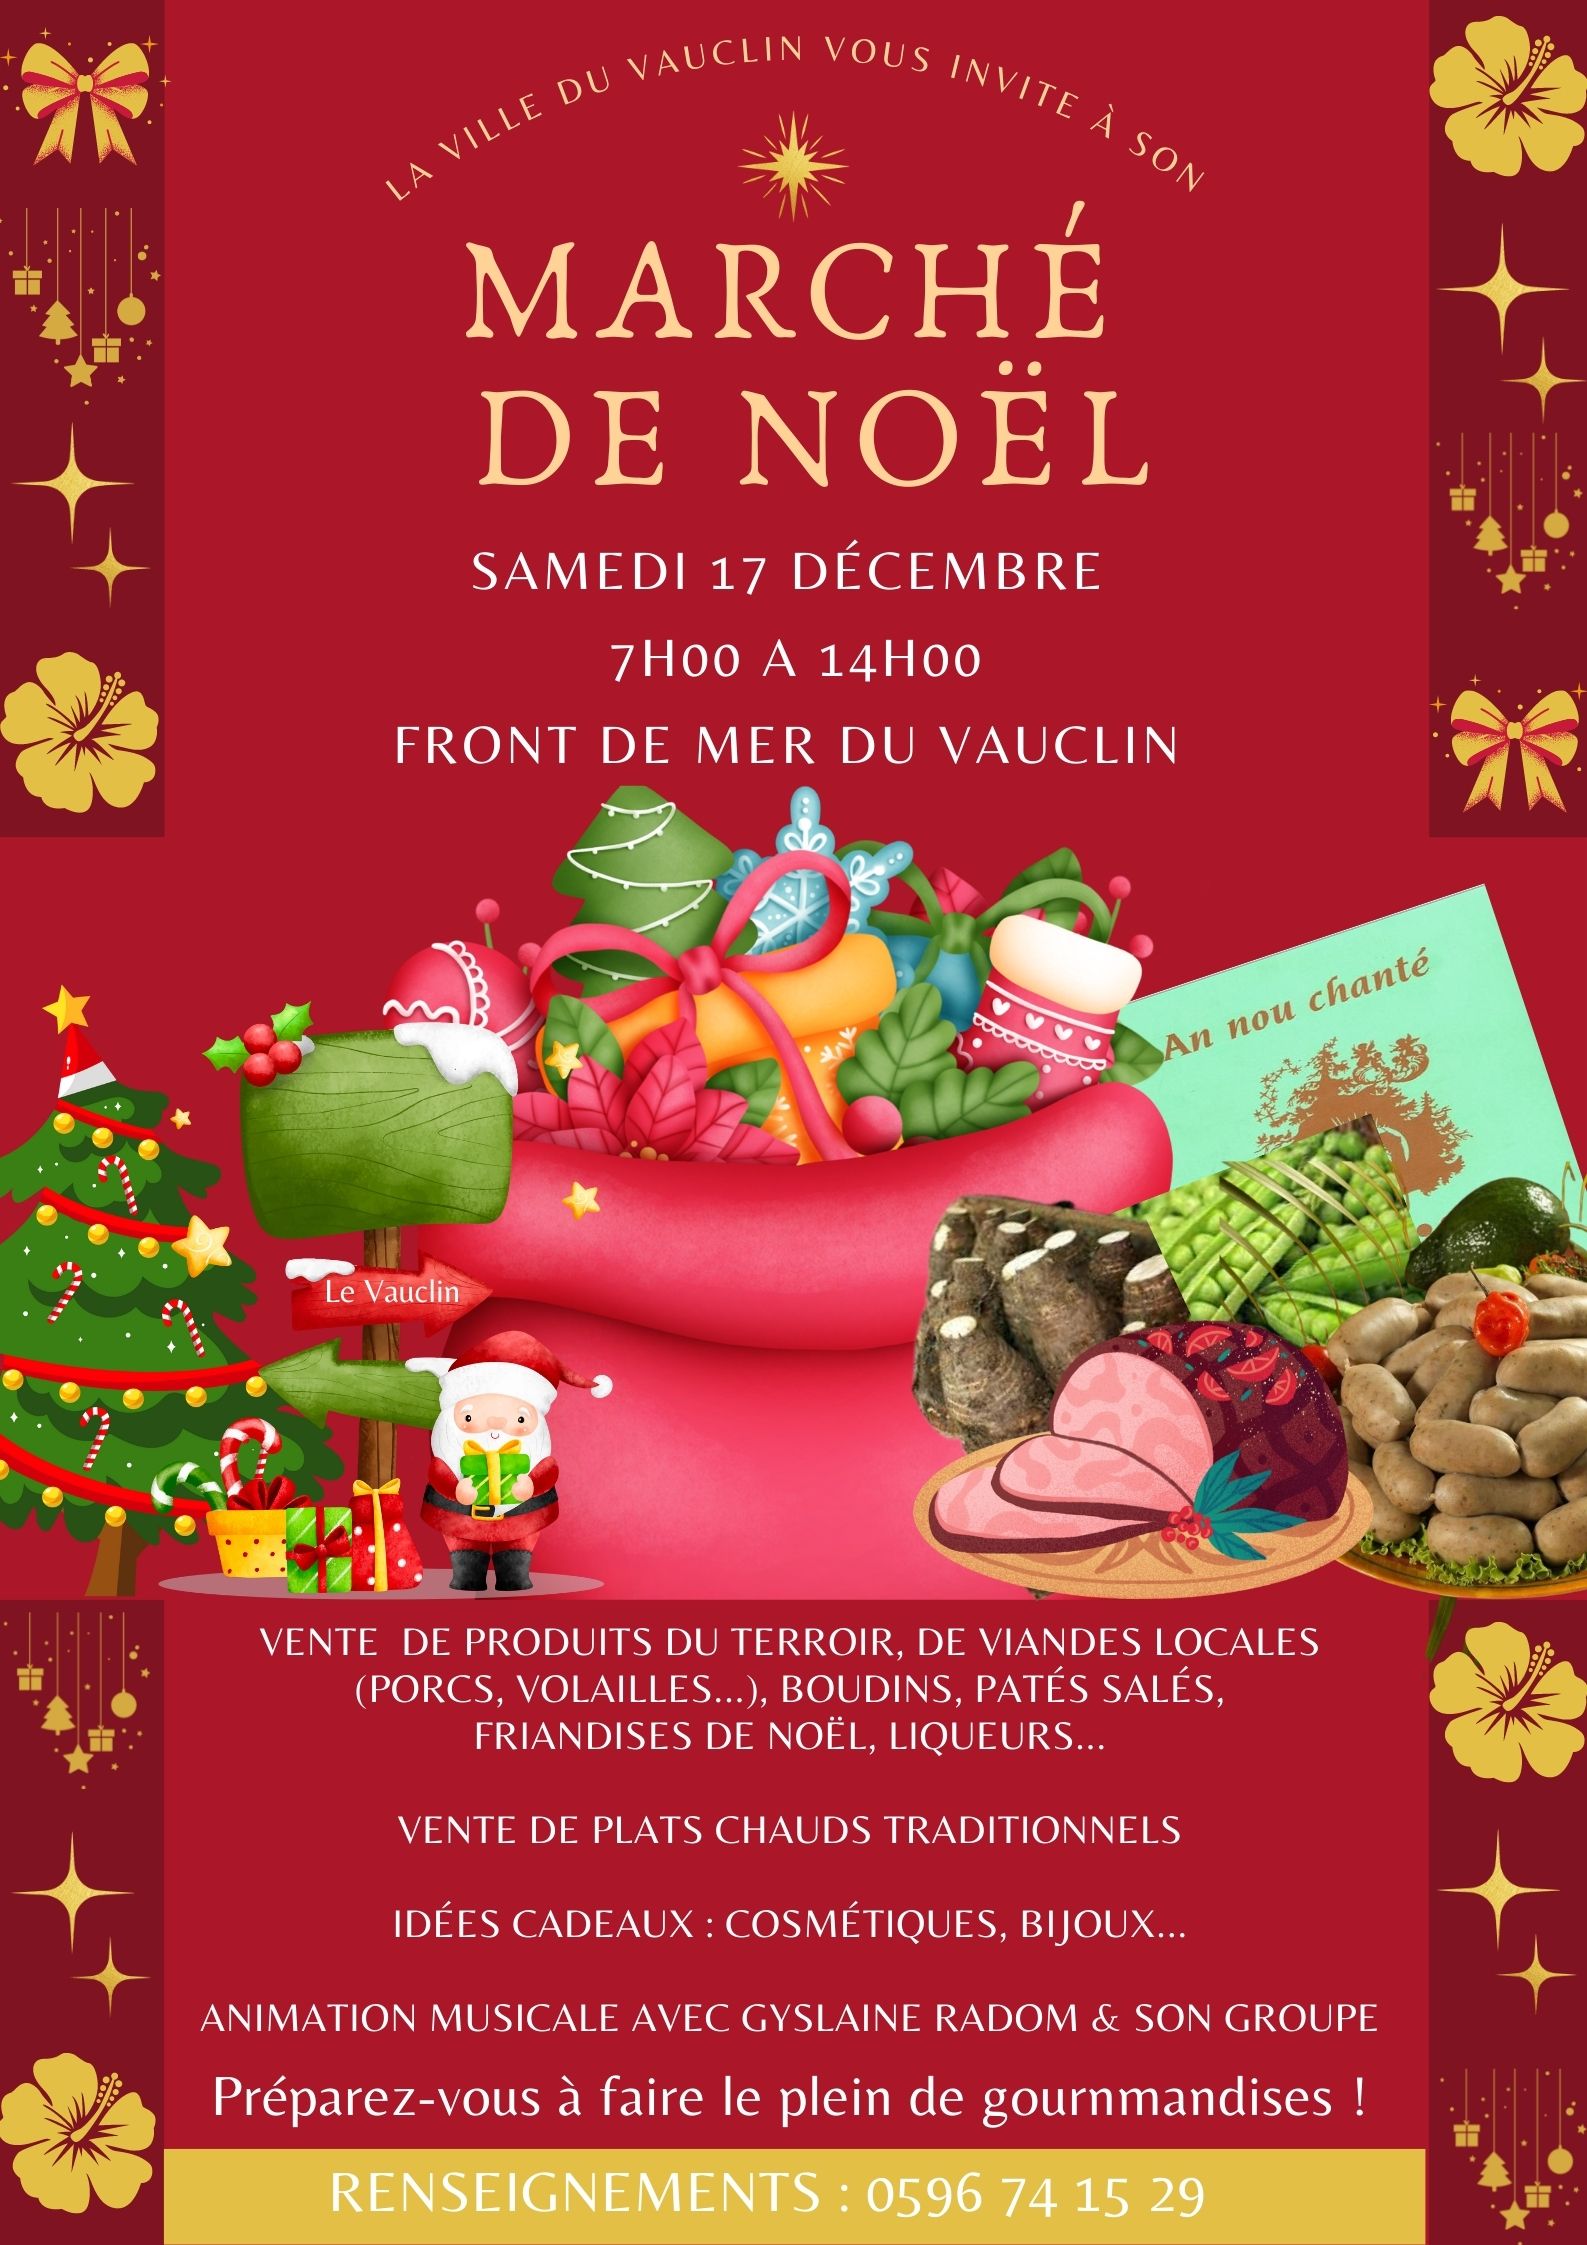 Marché de Noel - Ville du Vauclin - Samedi 17 Décembre